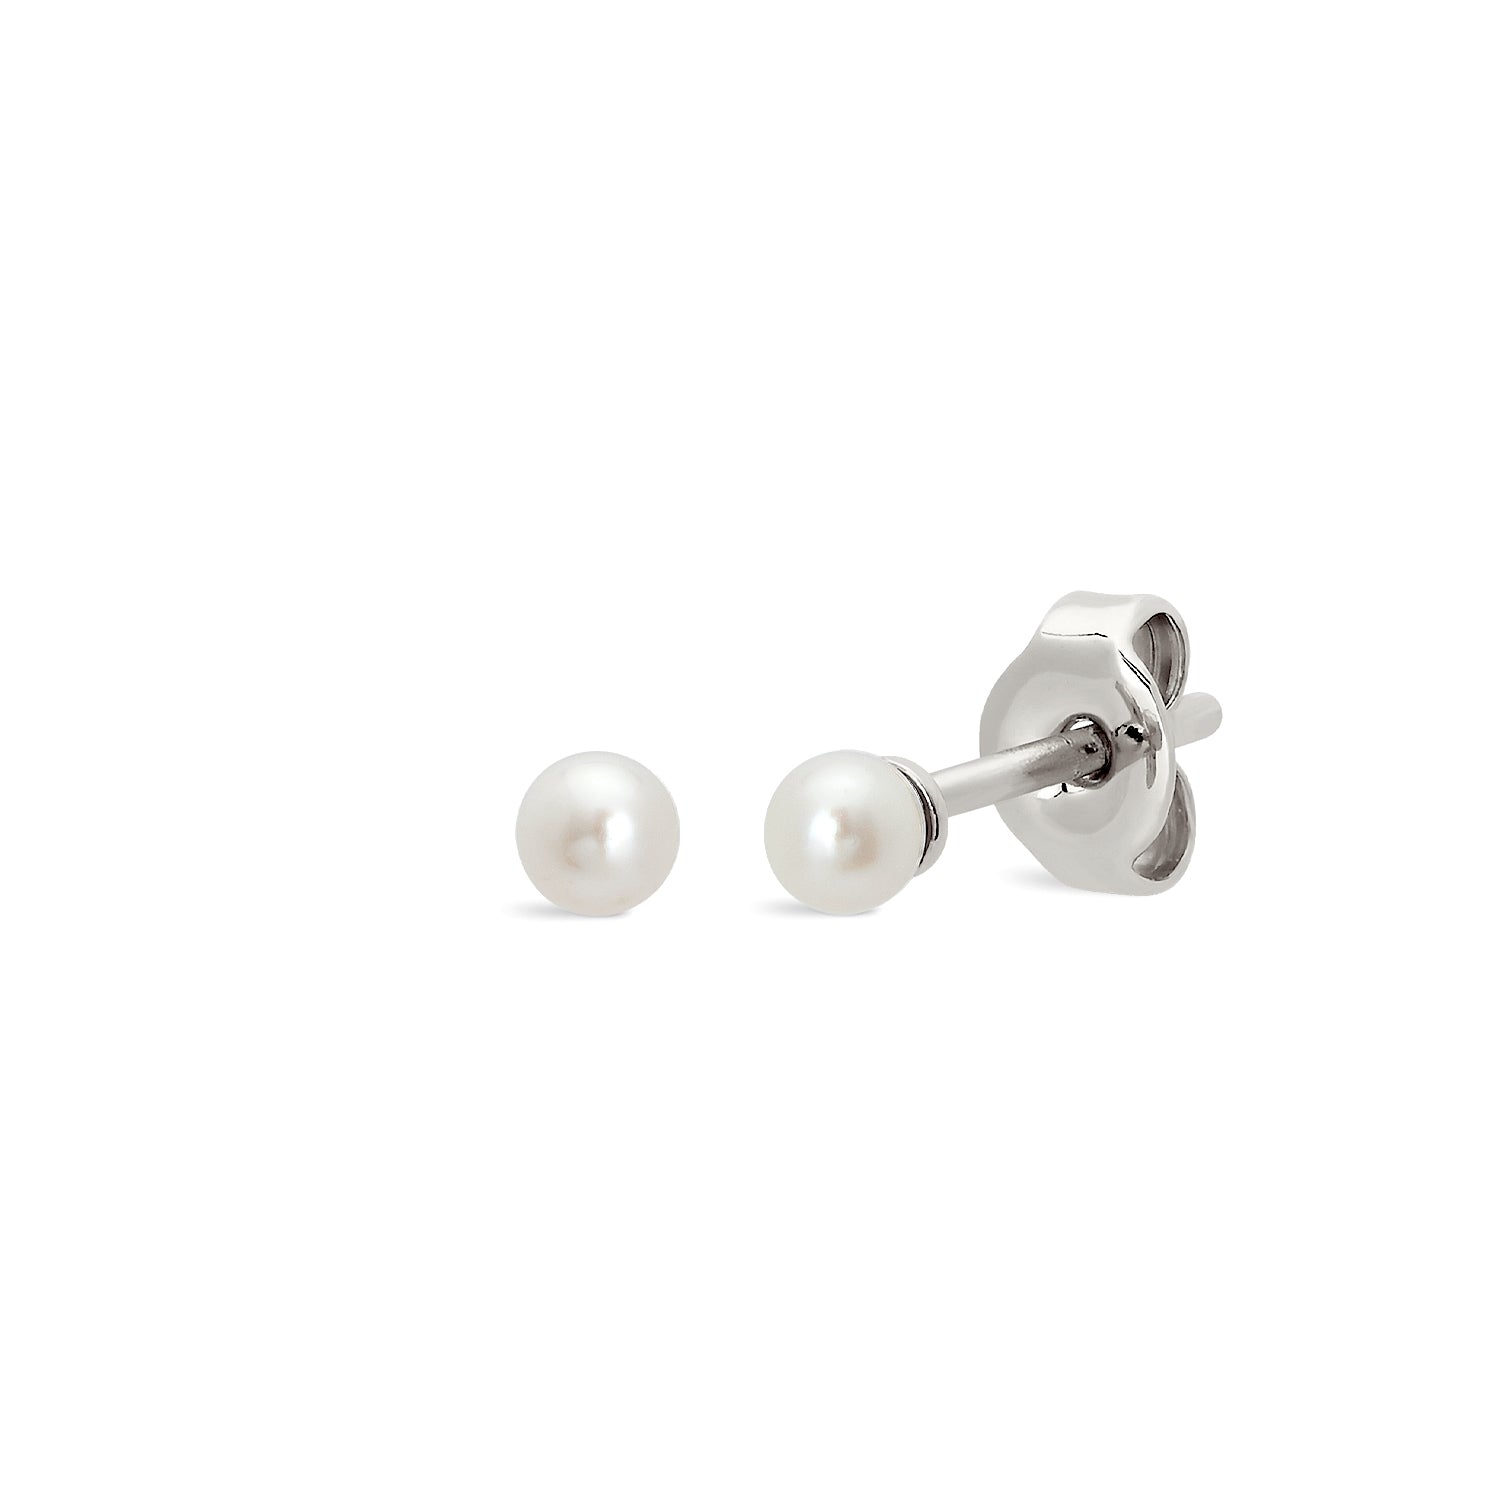 J&CO Jewellery Baby Pearl Stud Earrings Silver